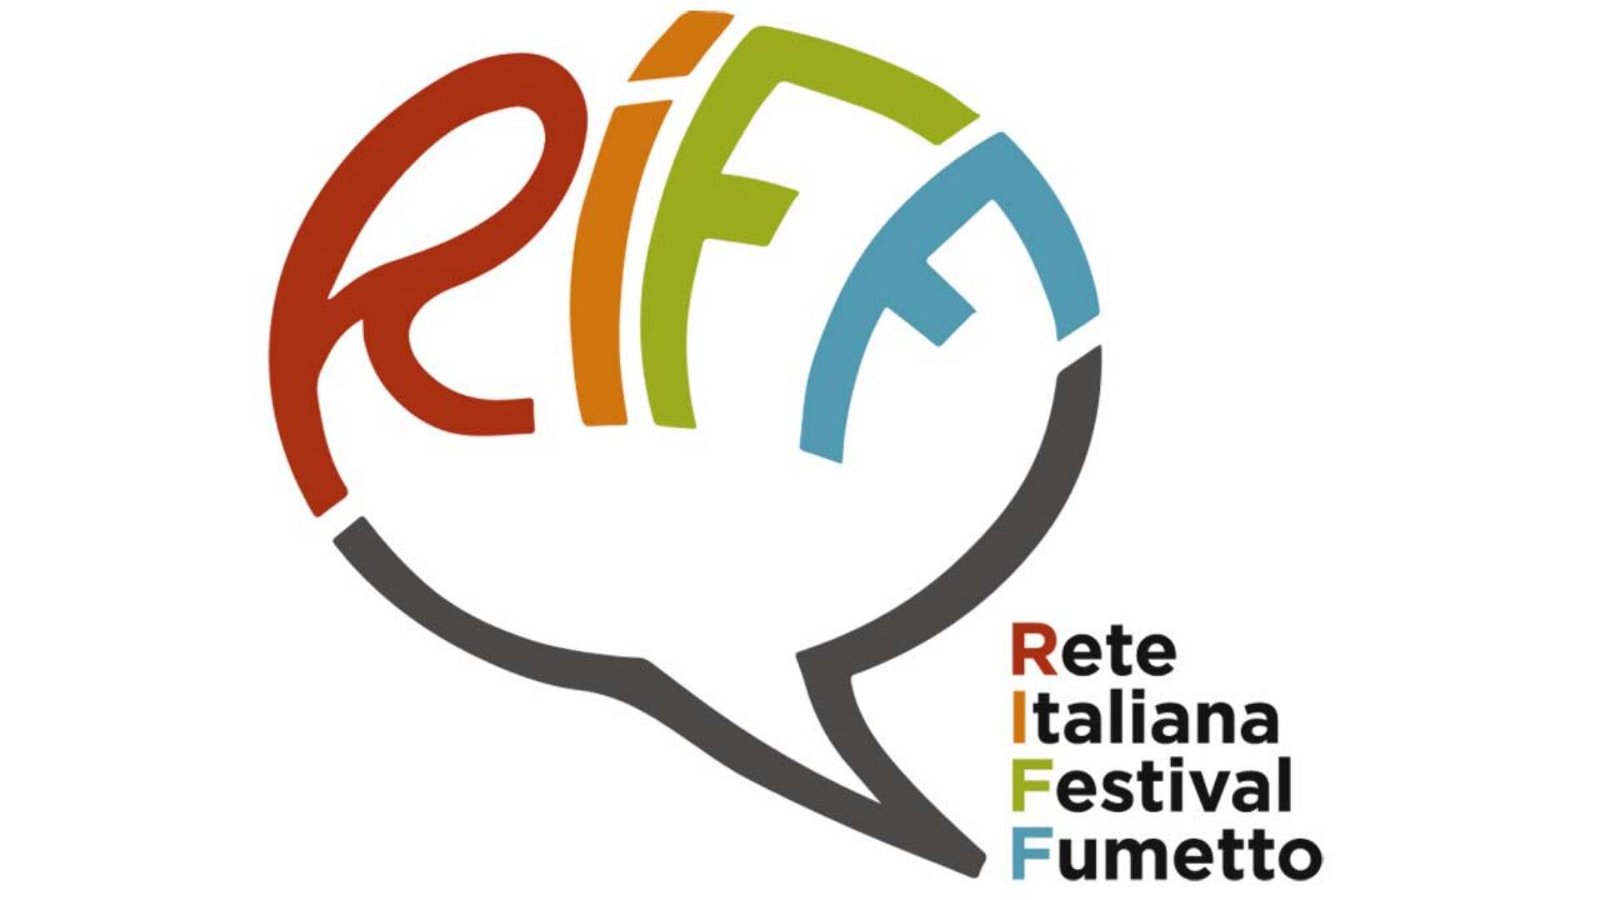 Immagine di Riff, la prima associazione nazionale dei festival del fumetto